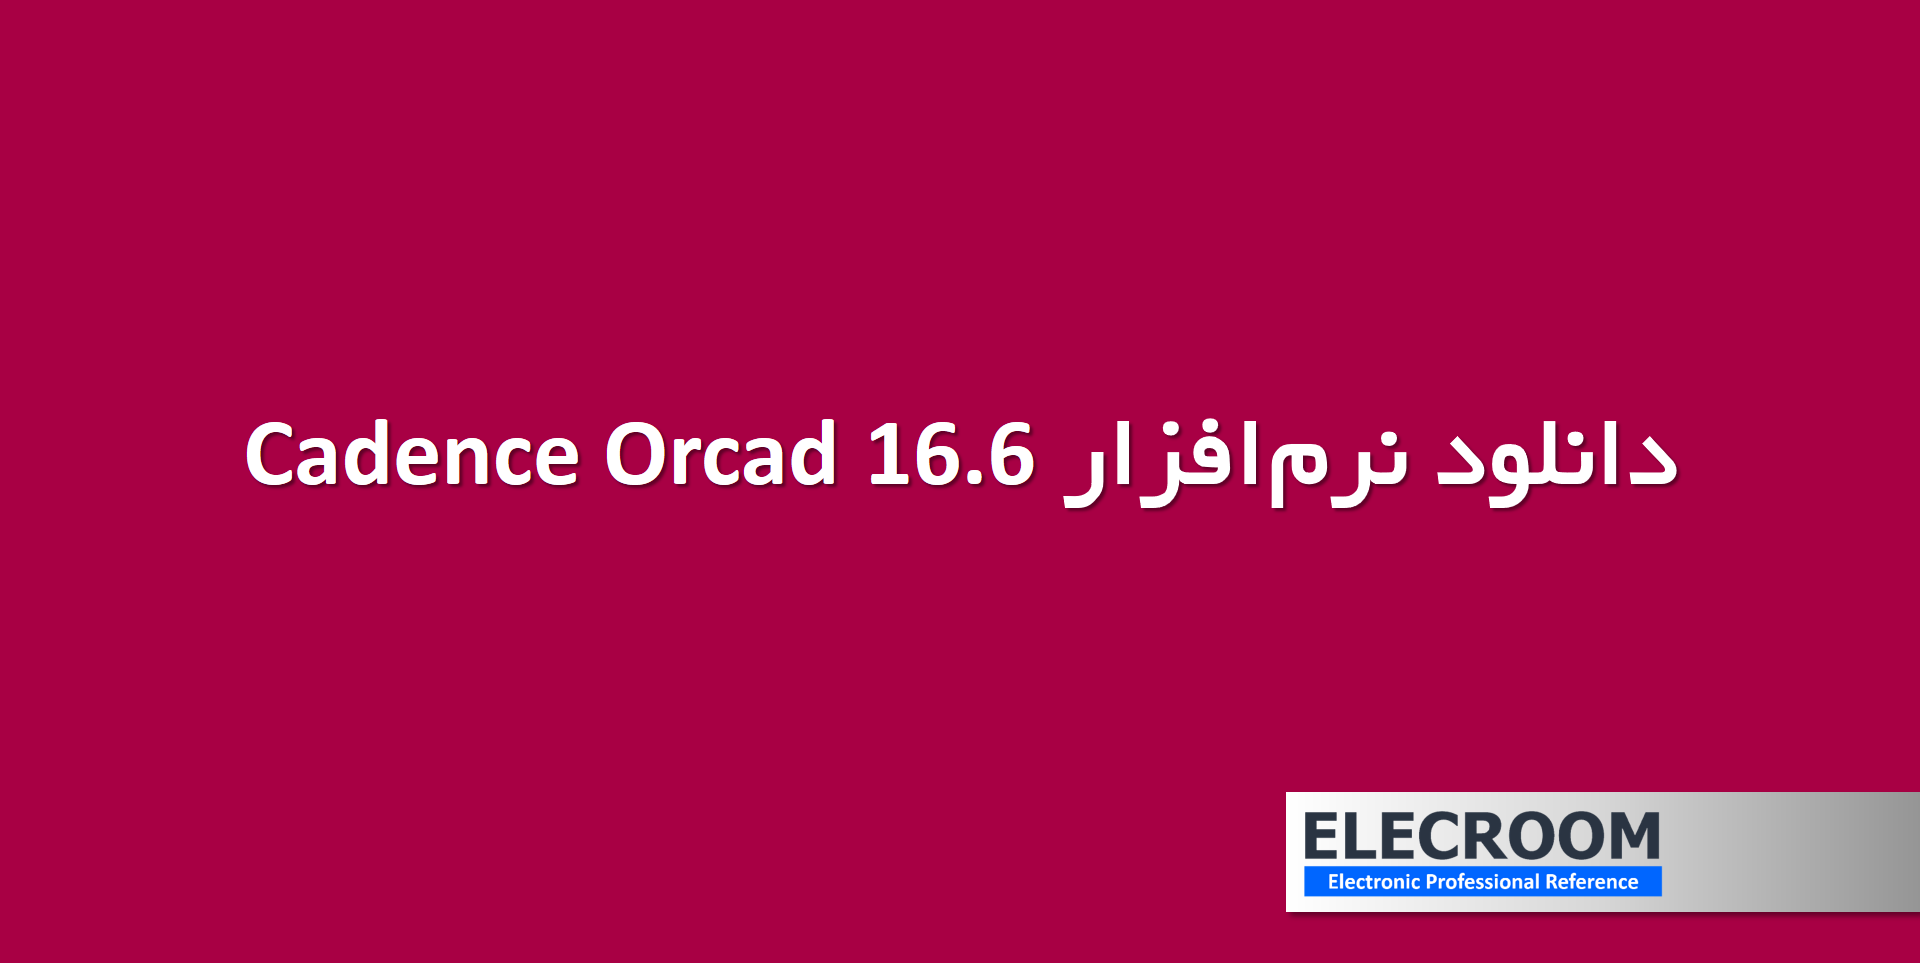 دانلود نرم افزار Cadence Orcad 16.6